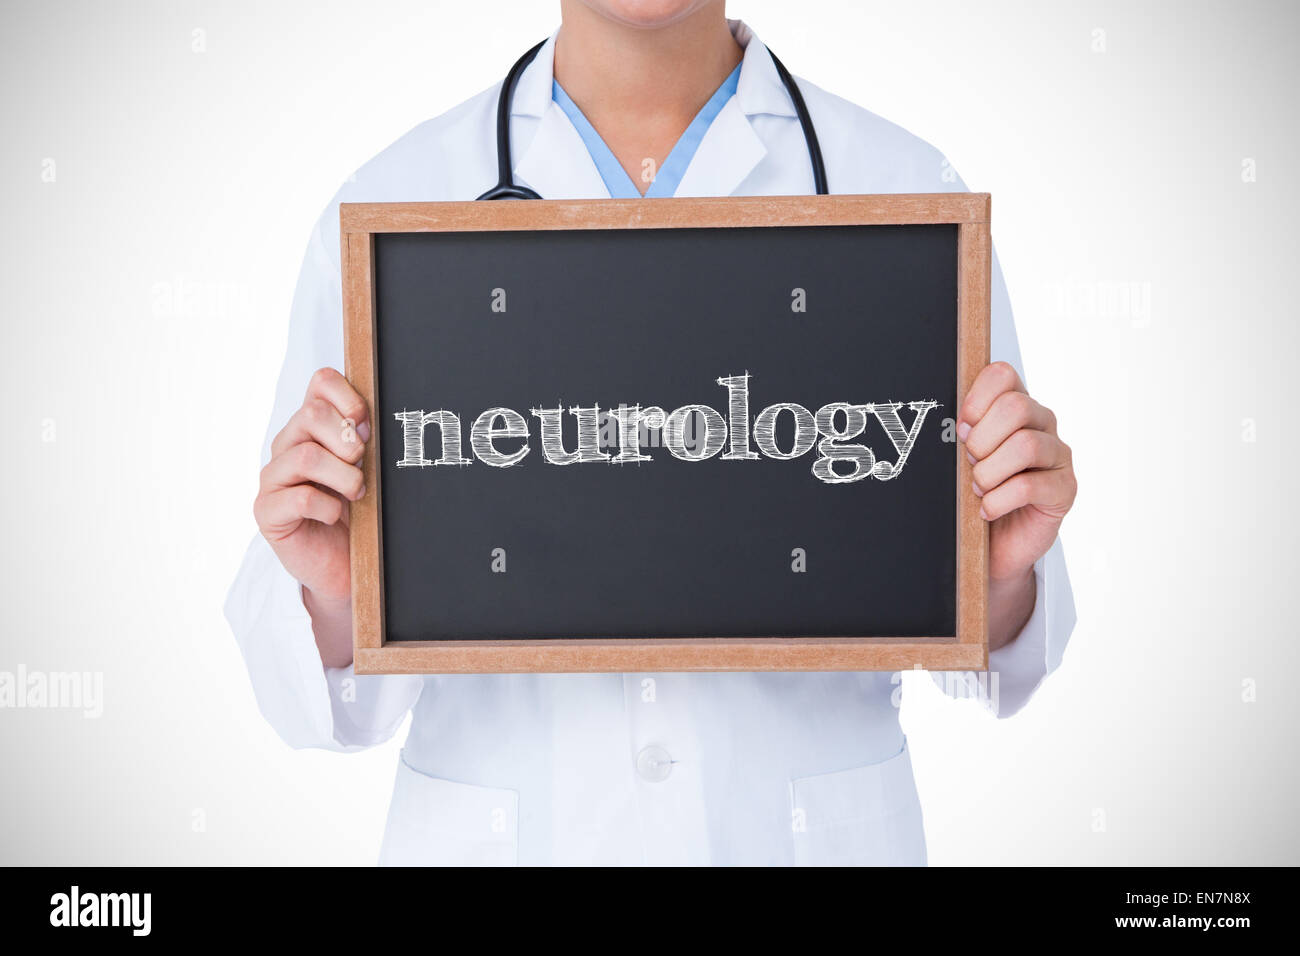 Neurologie gegen Arzt zeigen kleine Tafel Stockfoto